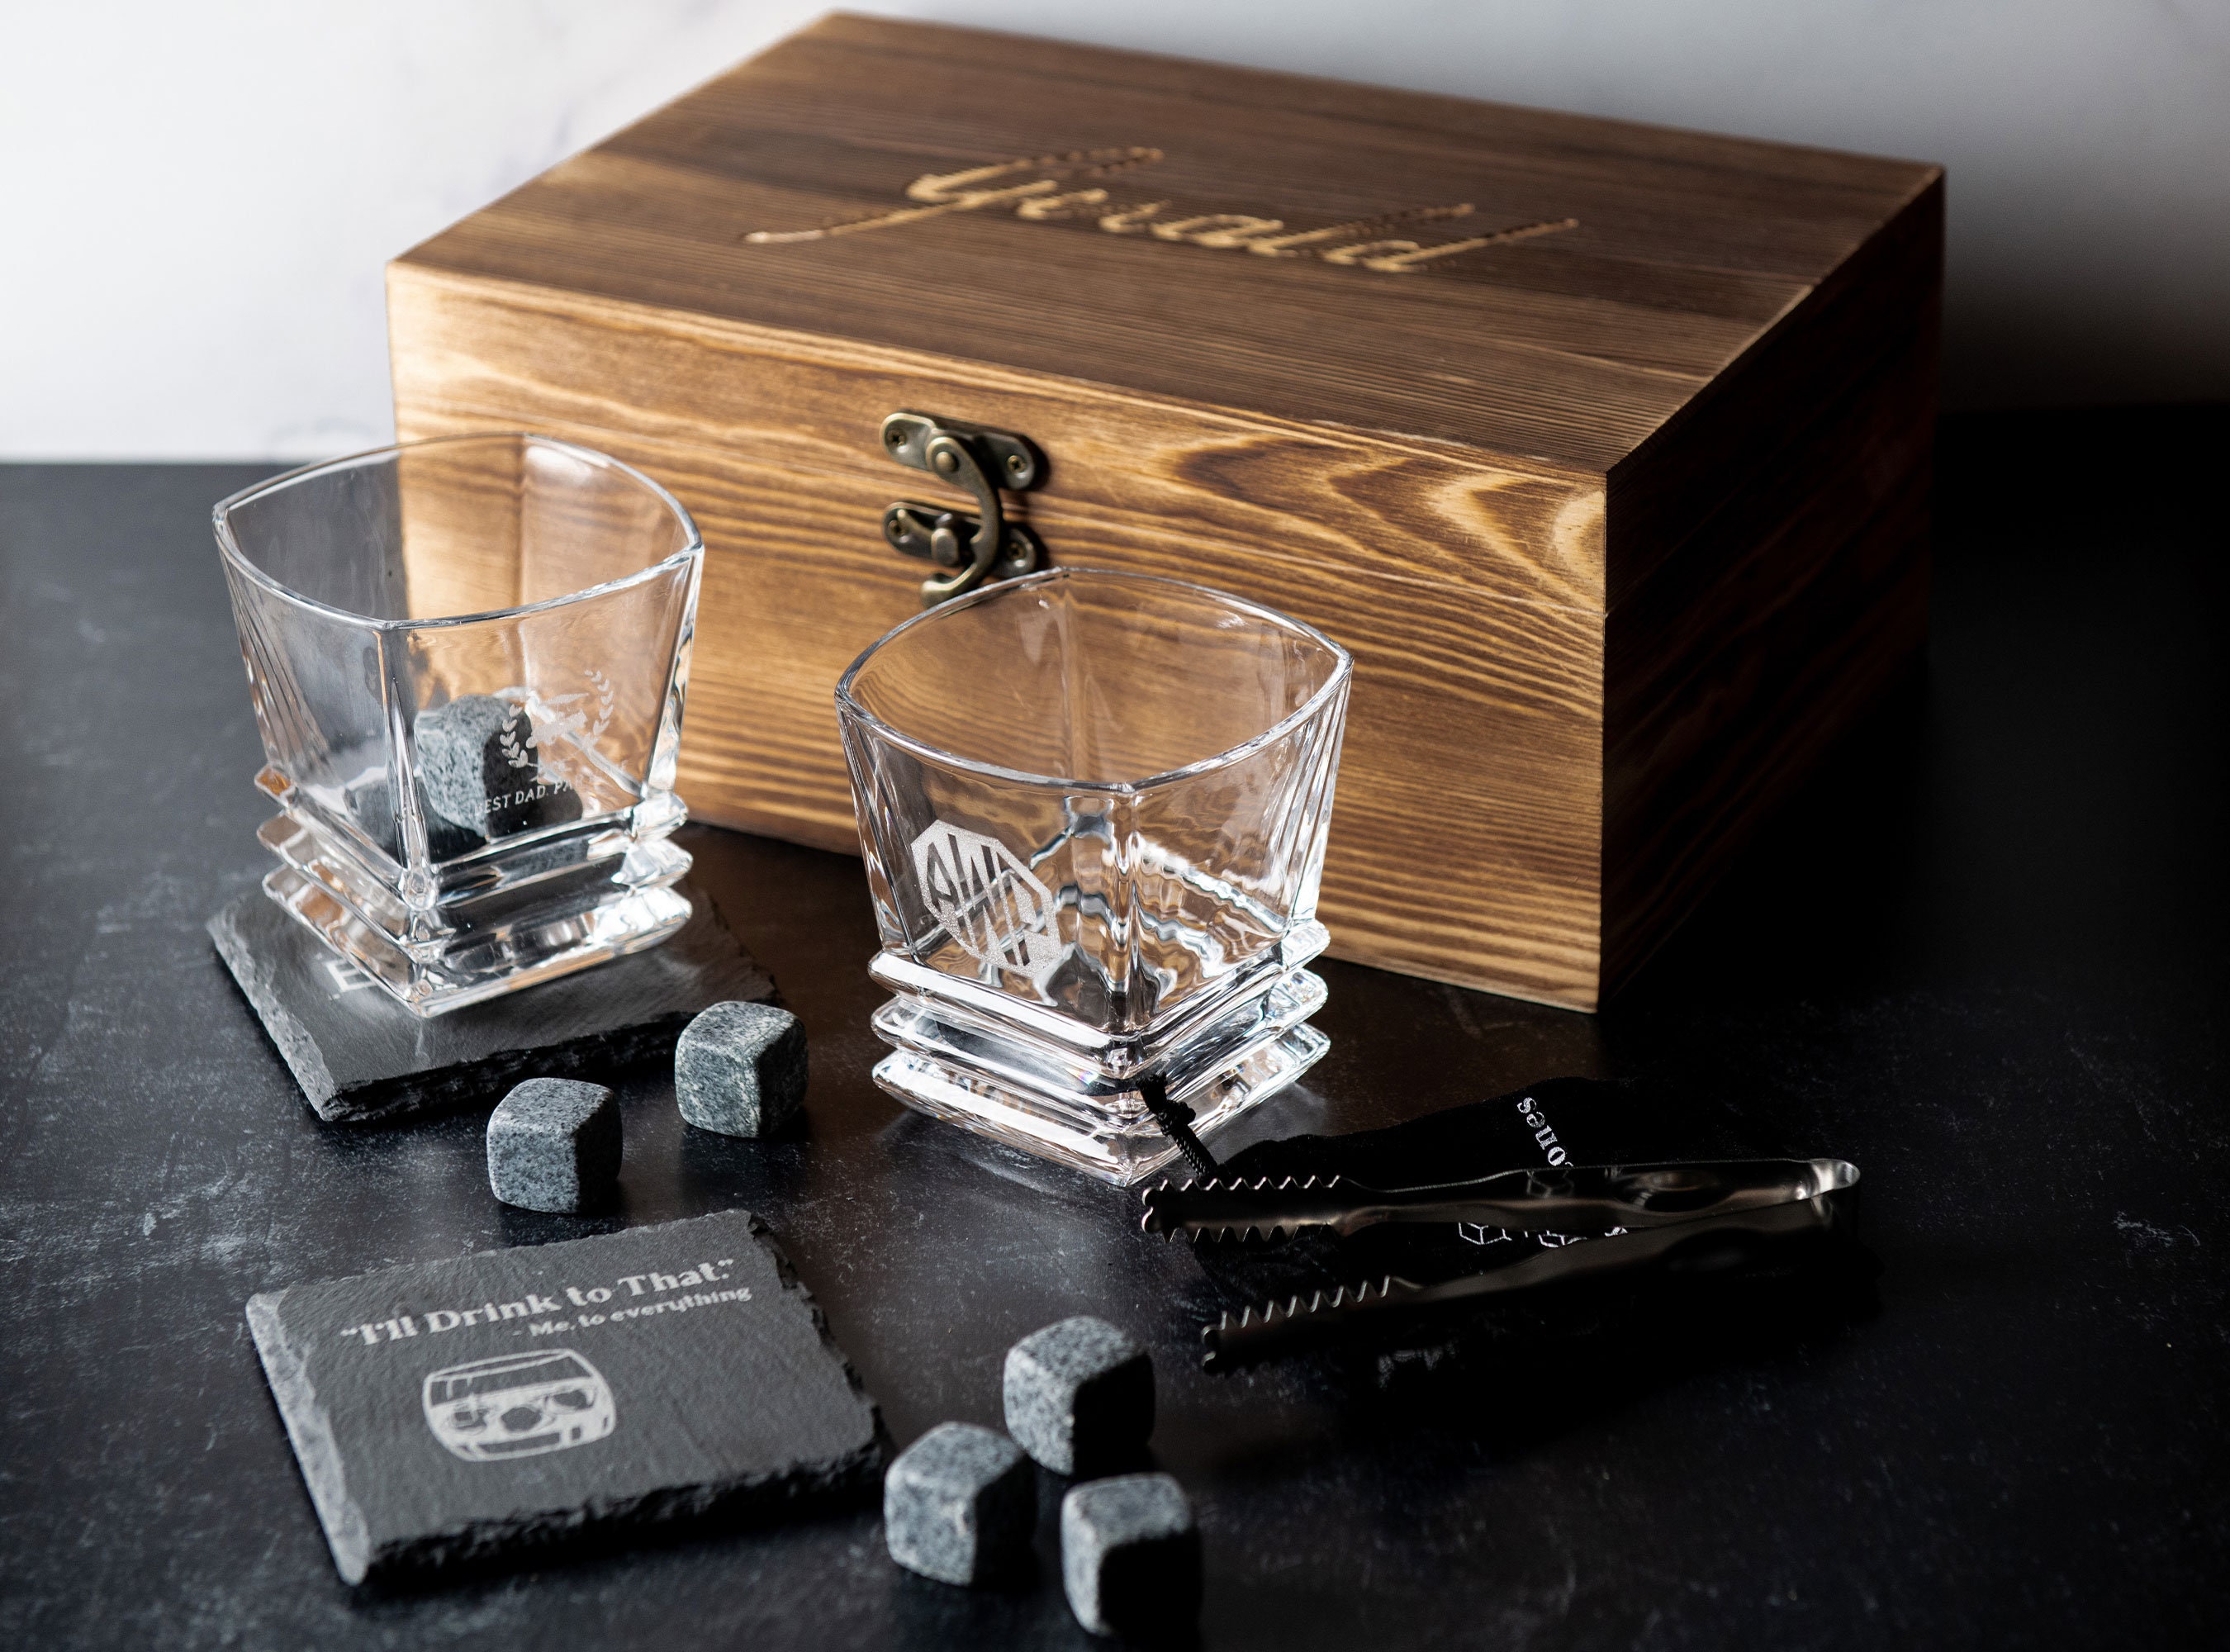 Whisky Stone Gift Set-Coffret Cadeau Bois Exquise, 4 Or Pierres à